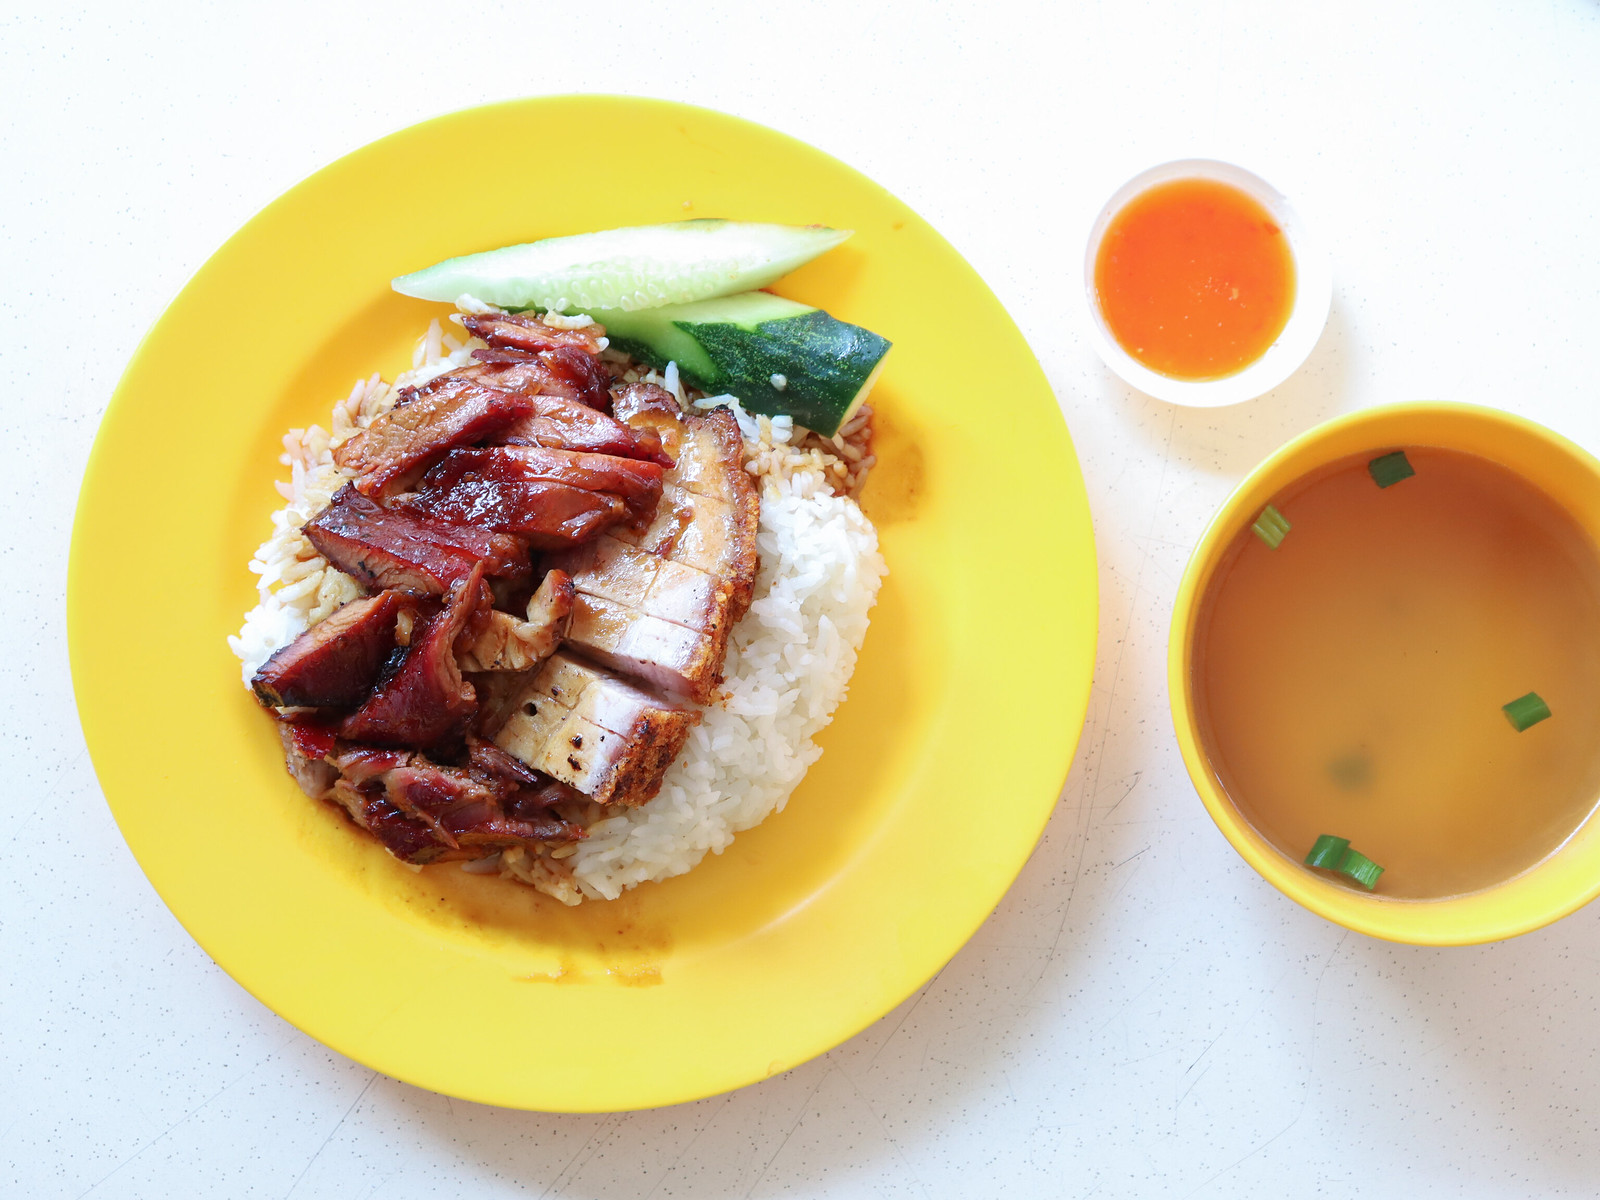 xiang ji roast chicken rice & noodles - chashao shaorou rice